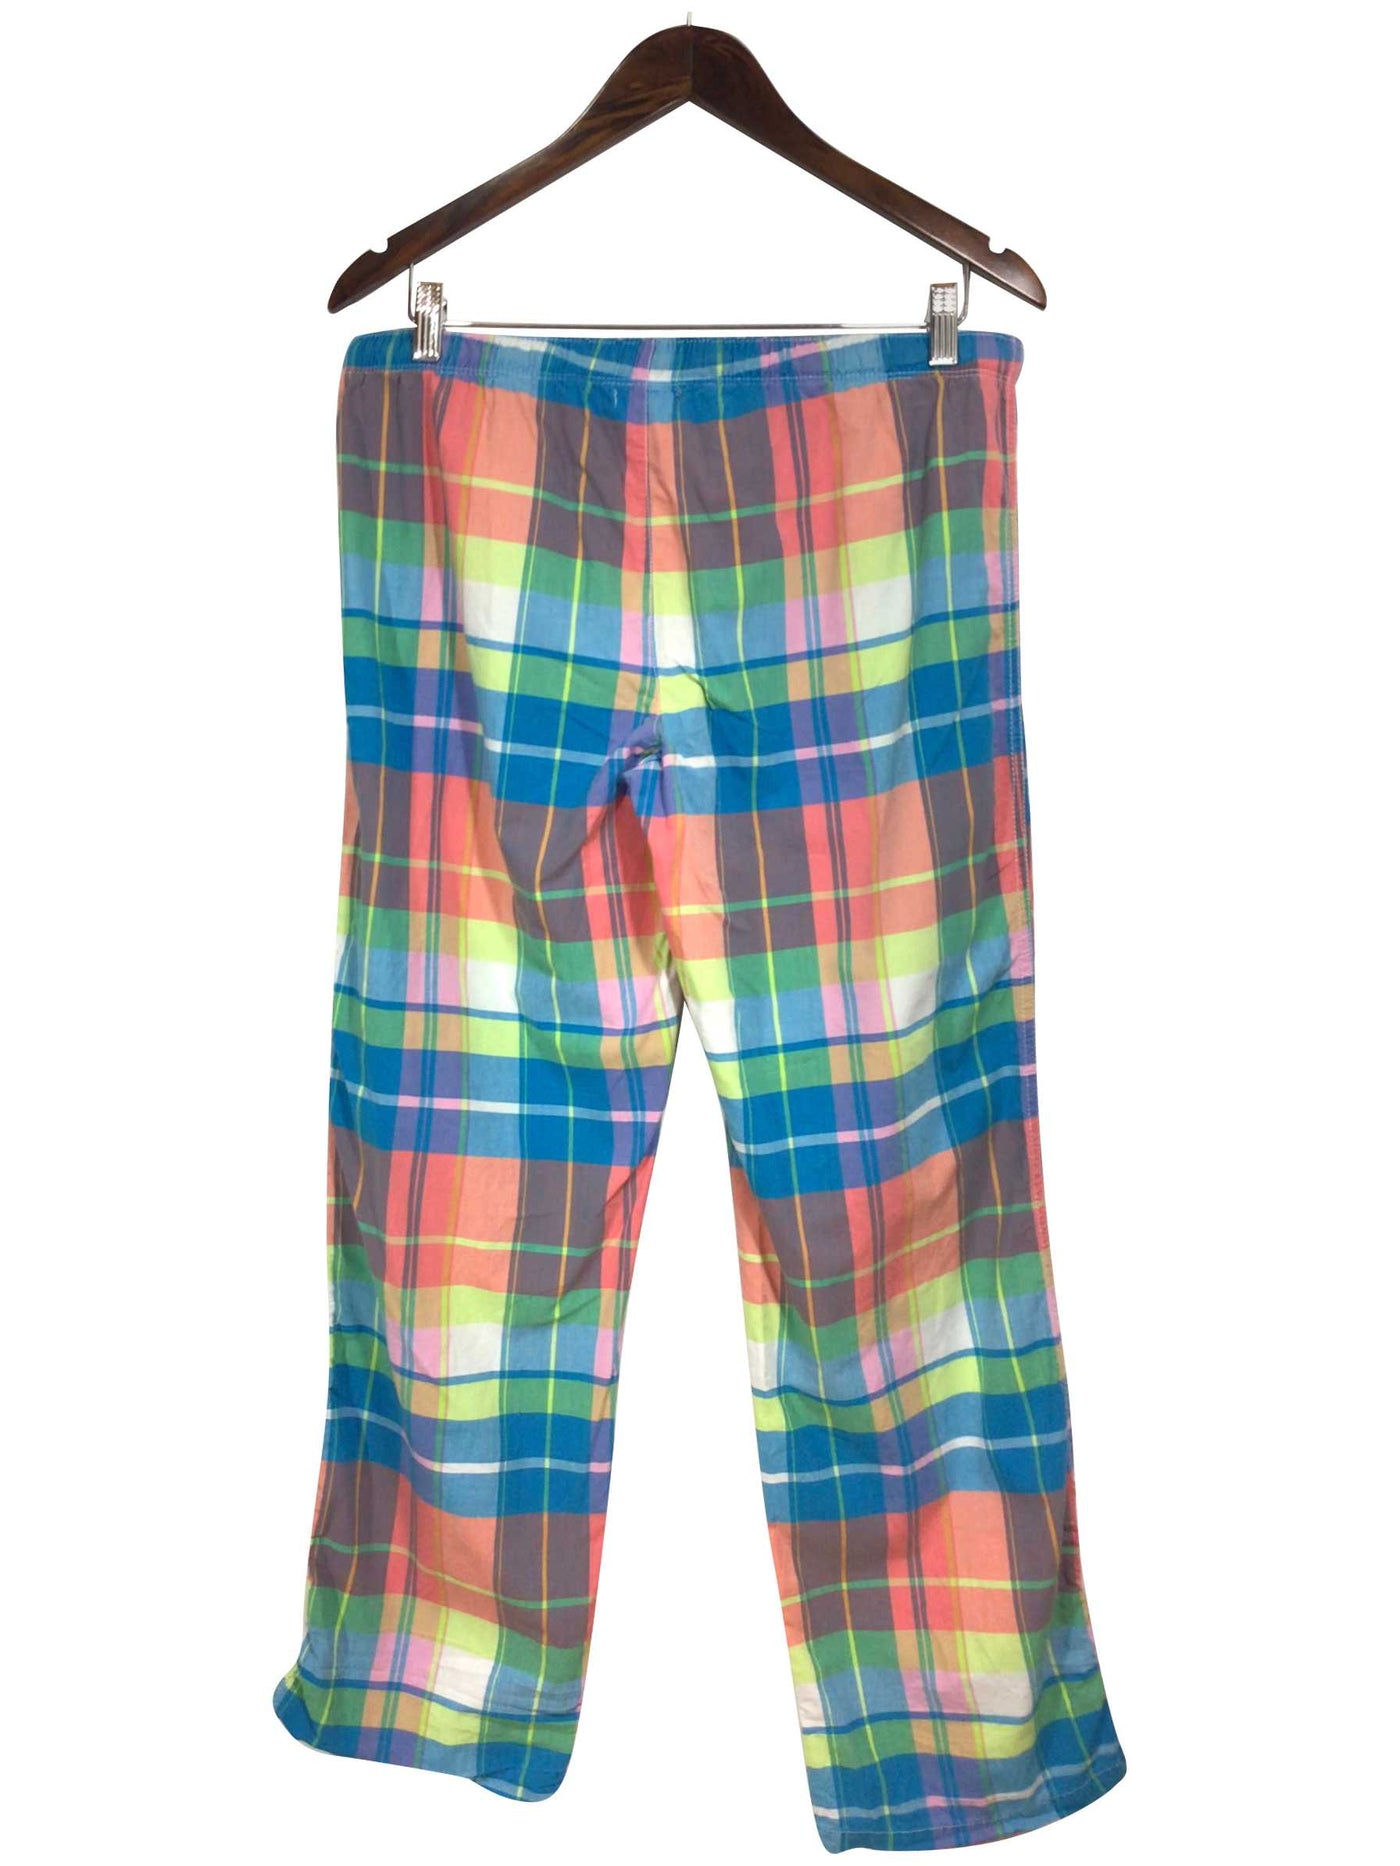 AERO Regular fit Pajamas in Blue - Size M | 15 $ KOOP